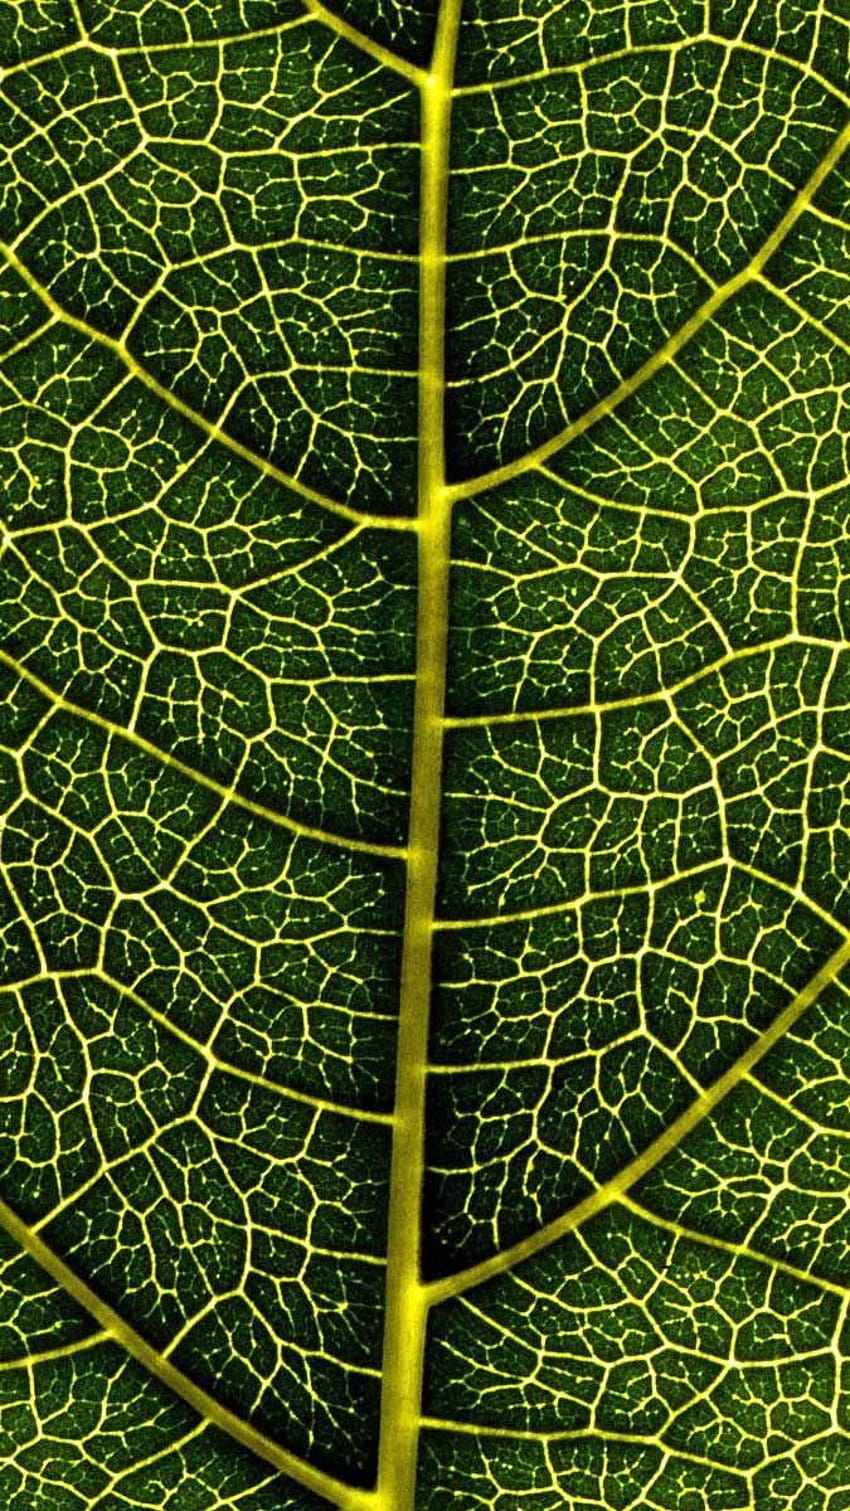 Iphone Leaf veins macro HD phone wallpaper